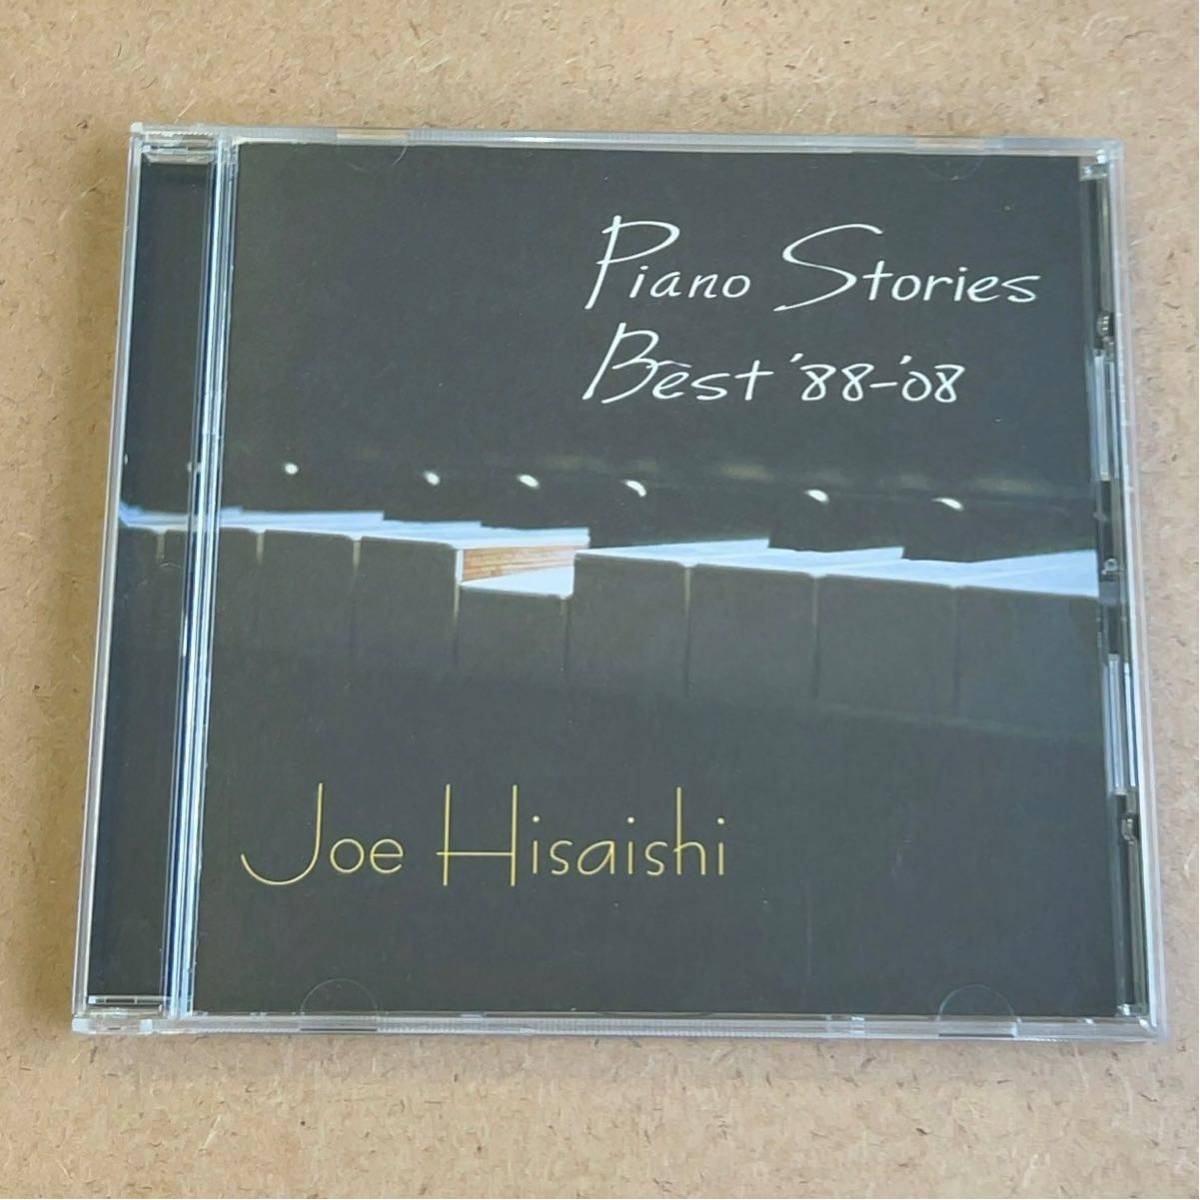 送料無料☆久石譲『Piano Stories Best 88-08』CD☆美品☆アルバム☆ジブリ☆337の画像1